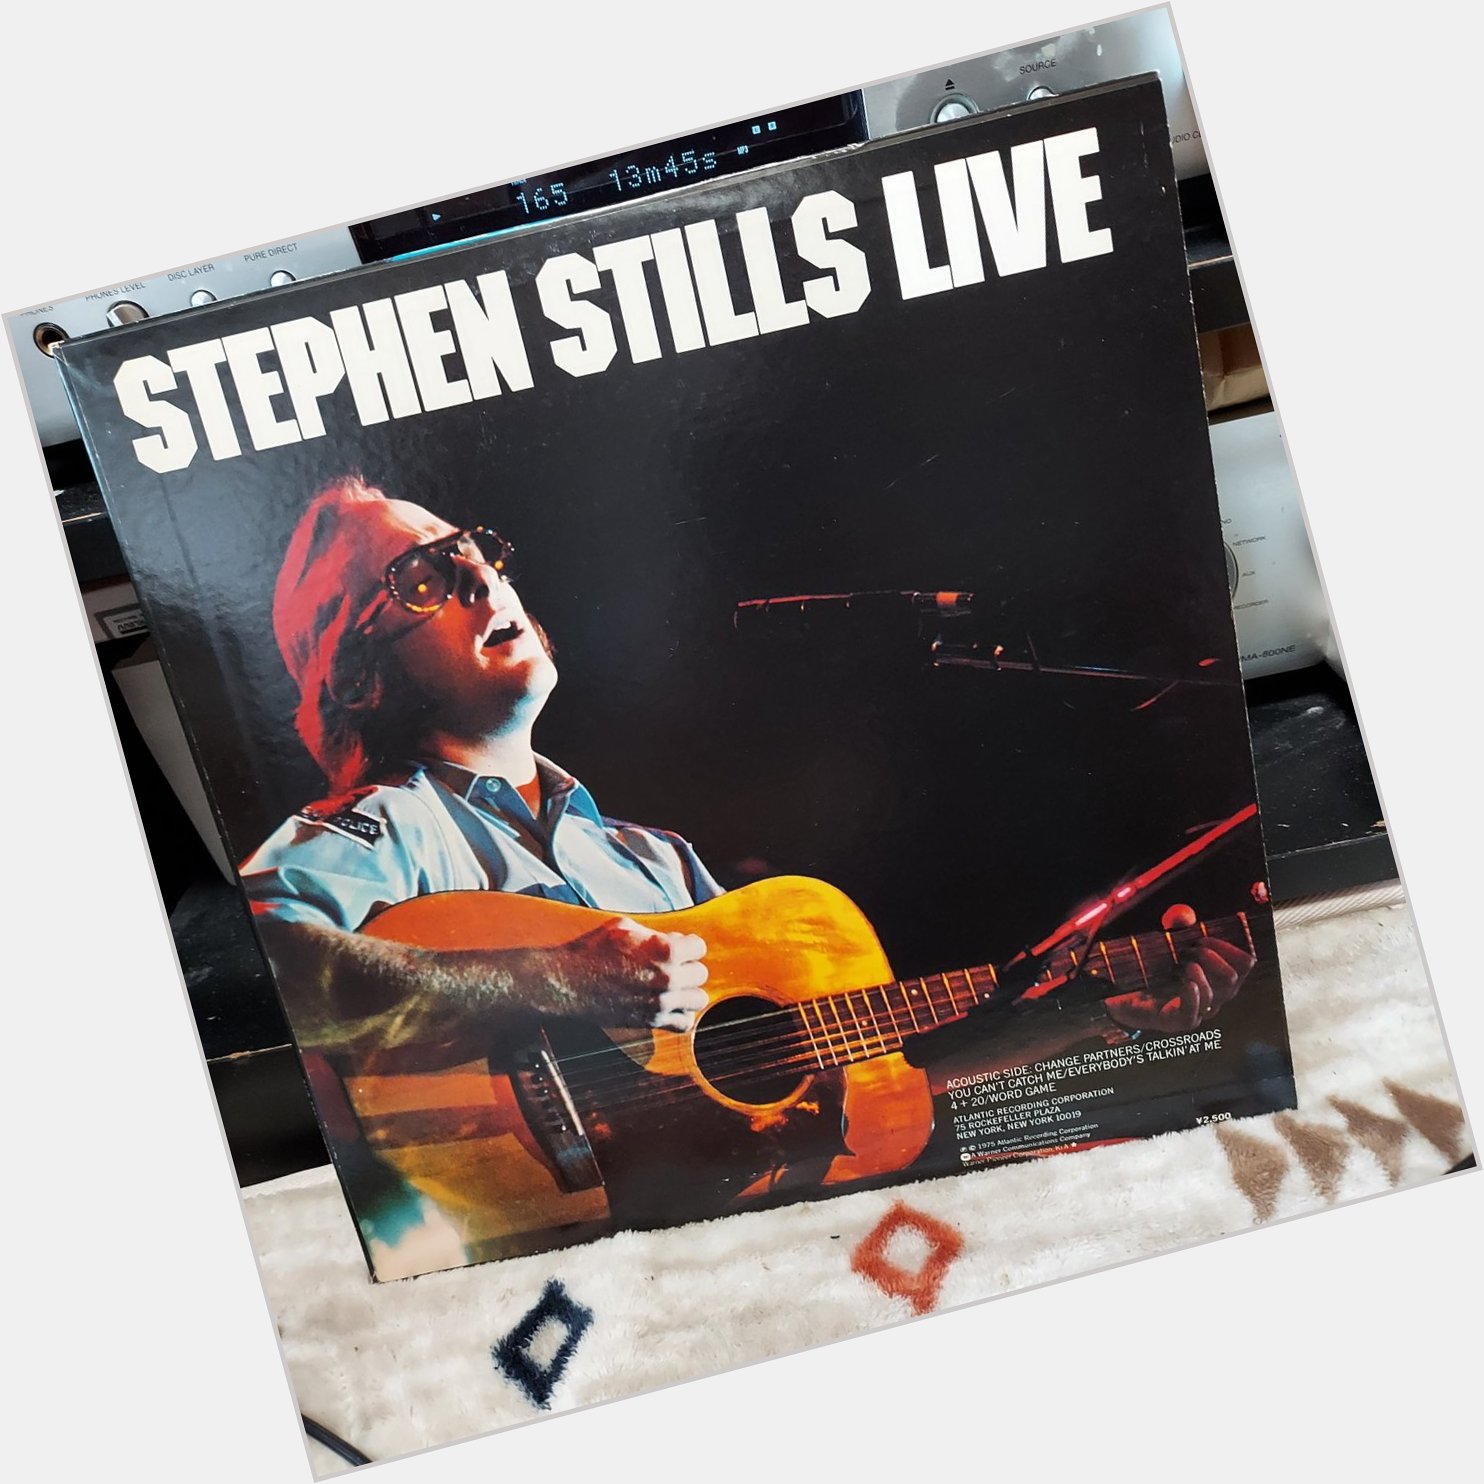 Stephen Stills Live  acoustic side
Happy Birthday,Stephen   